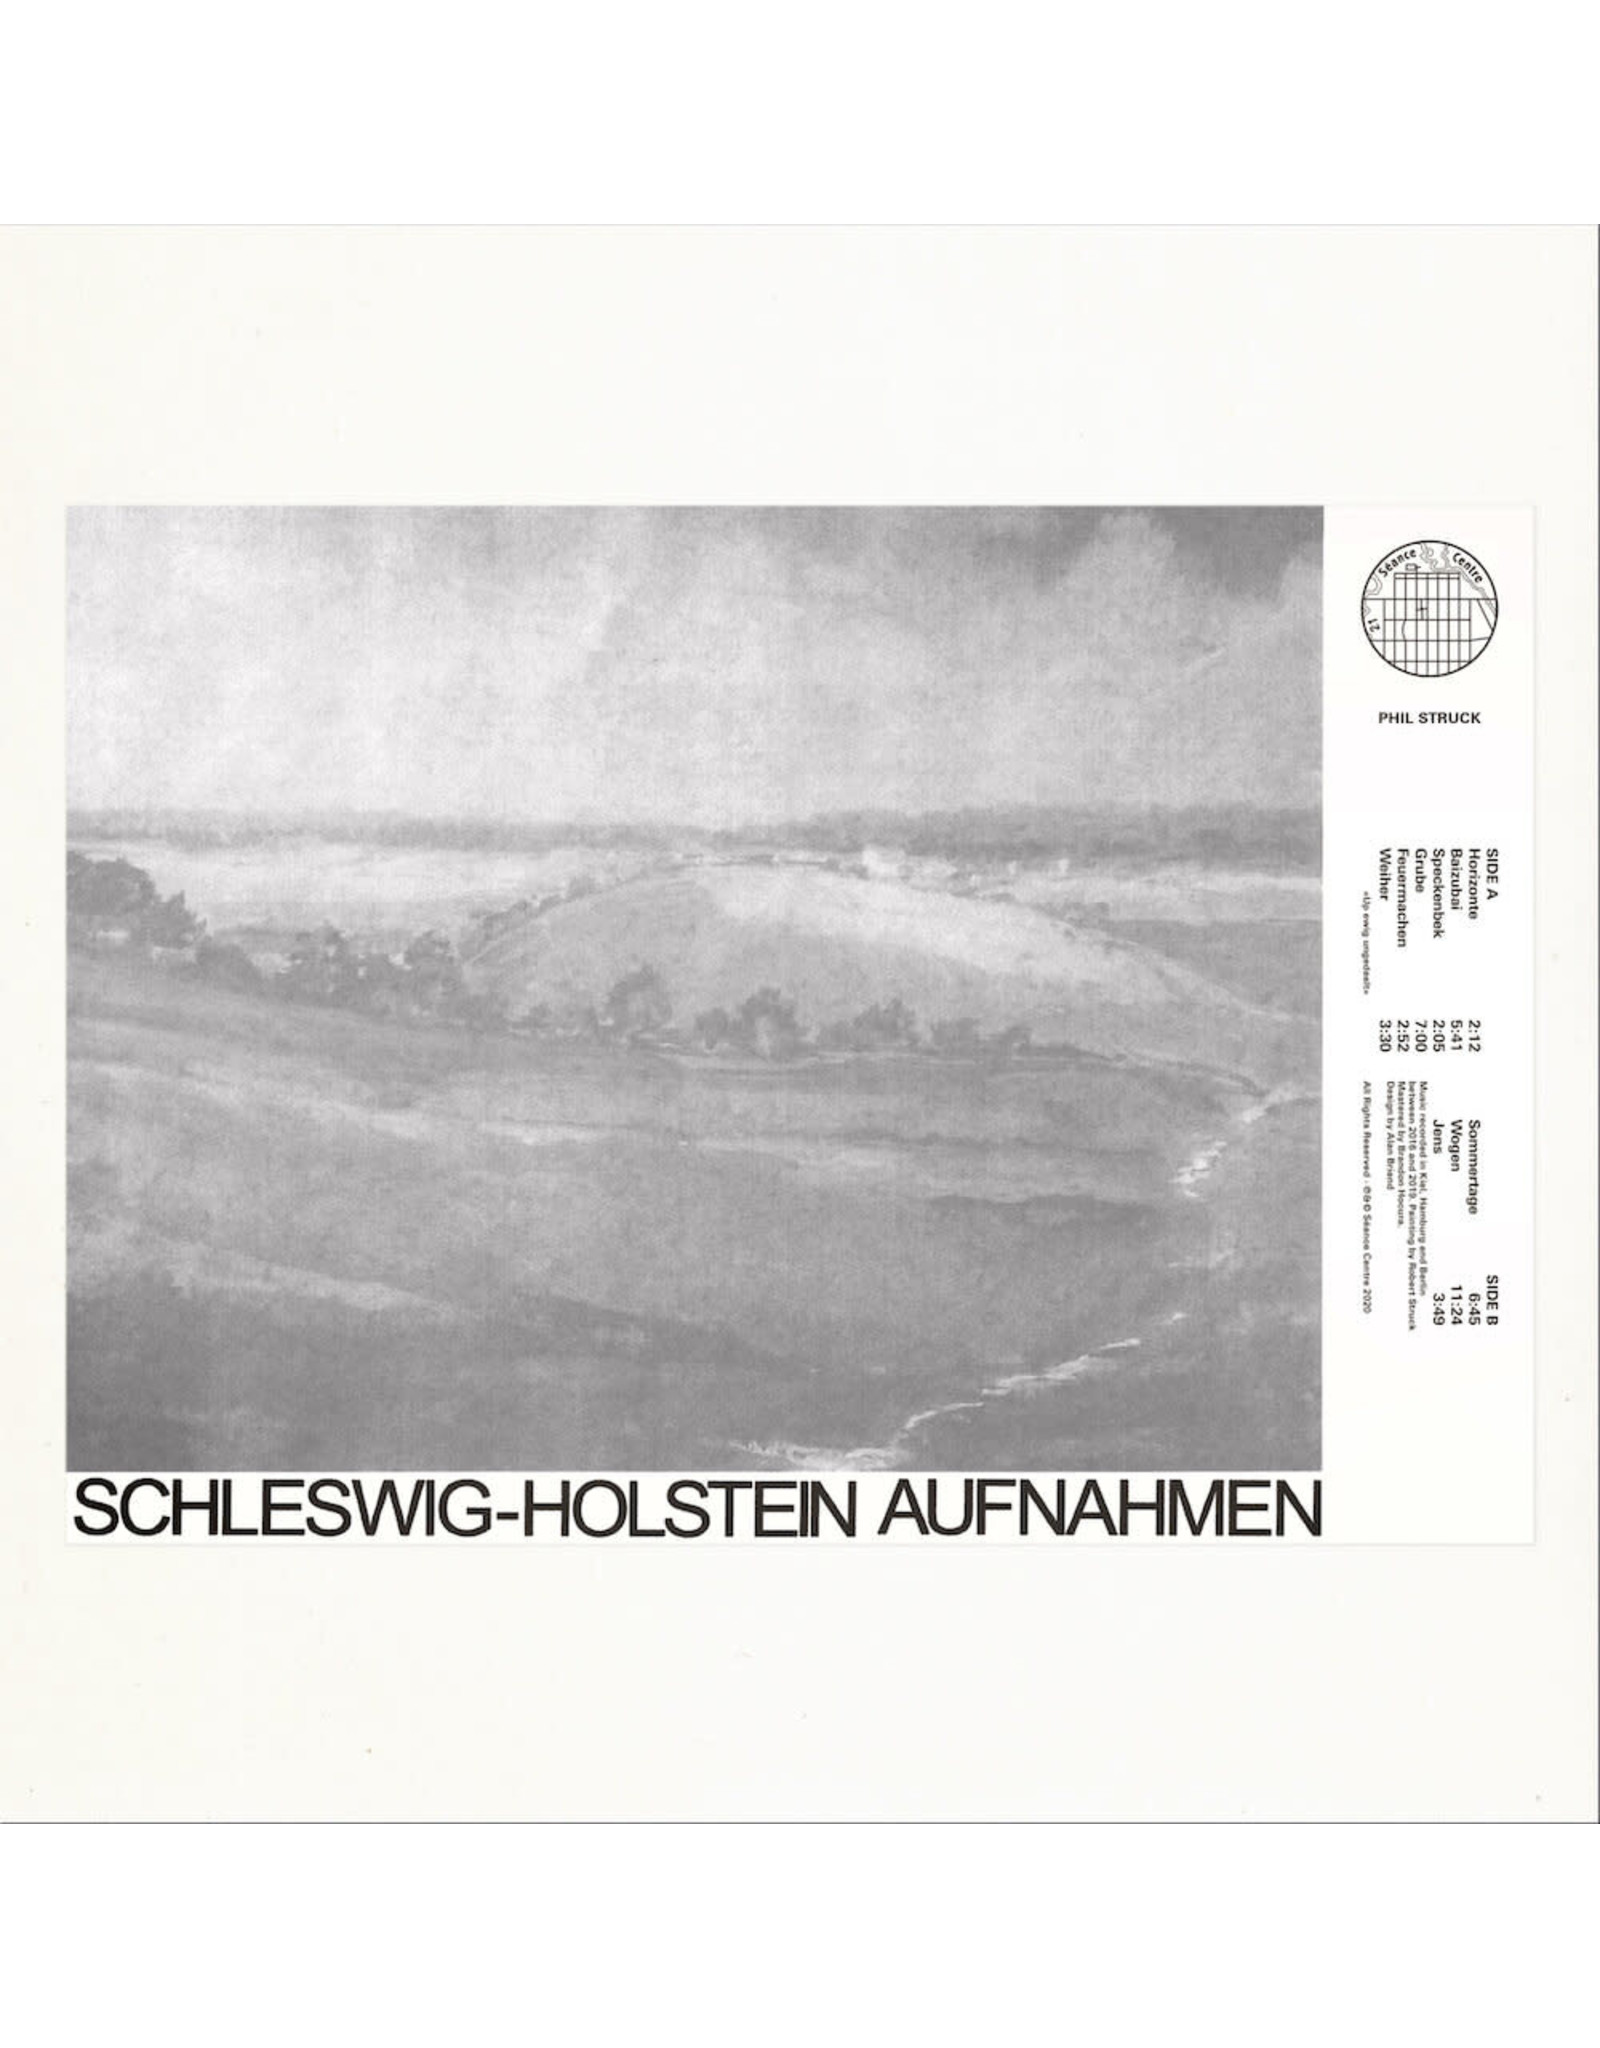 Seance Centre Struck, Phil: Schleswig-Holstein Aufnahmen LP